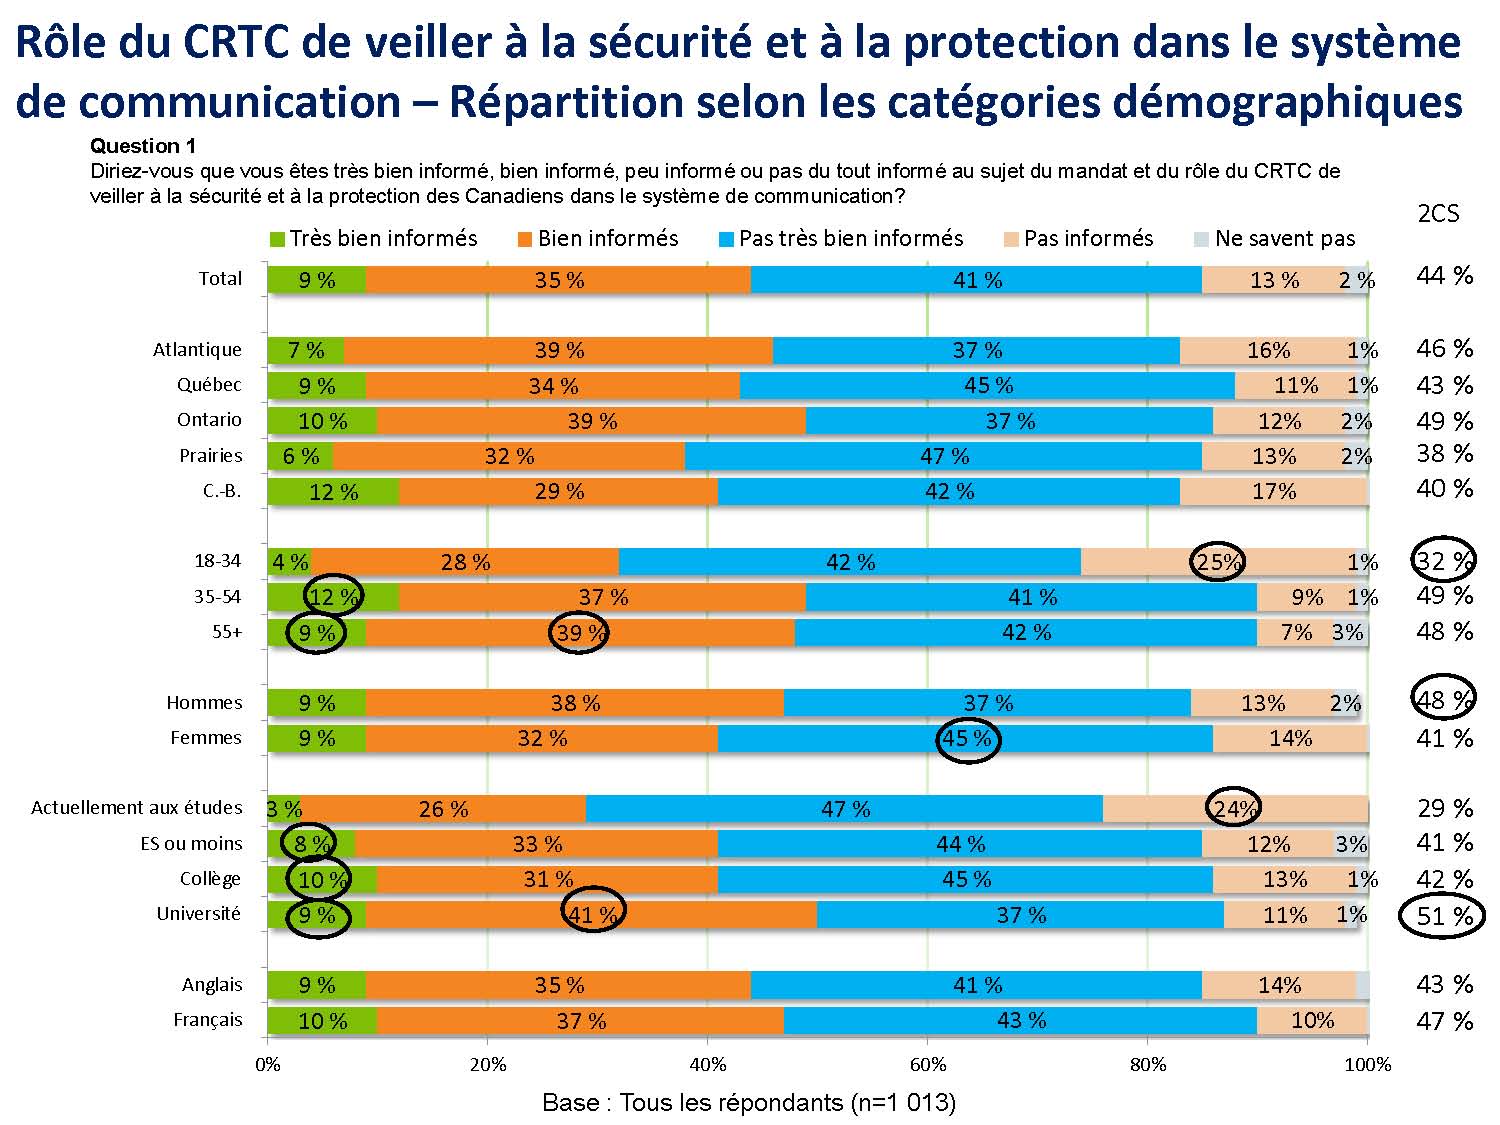 Rôle du CRTC de veiller à la sécurité et à la protection dans le système de communication - Répartition selon les catégories démographiques